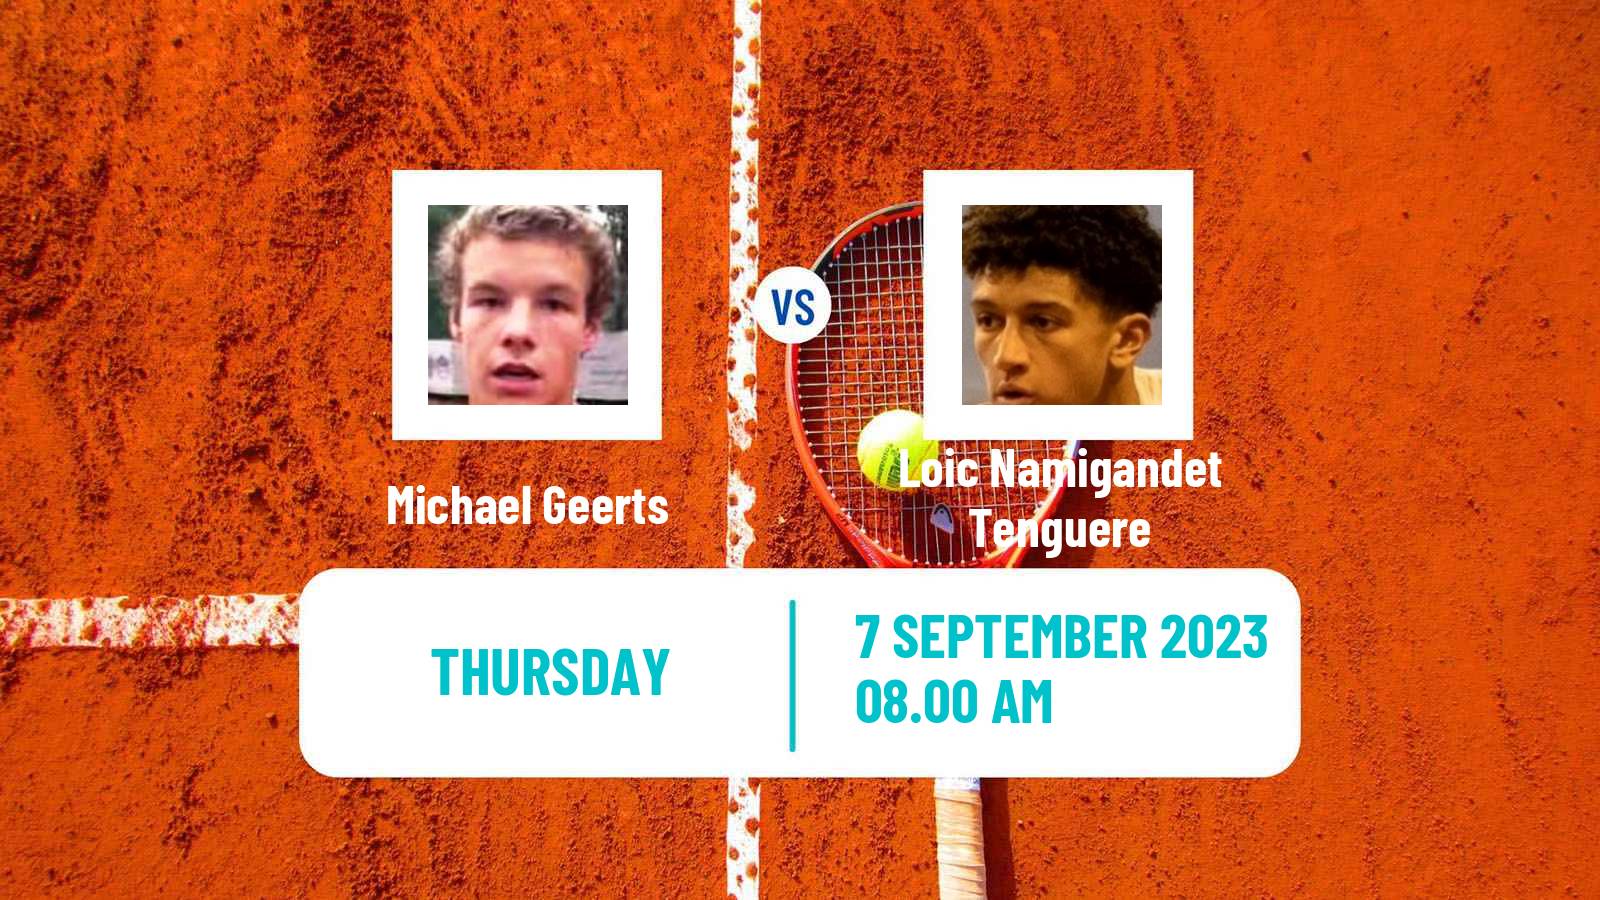 Tennis ITF M25 H Bagneres De Bigorre Men Michael Geerts - Loic Namigandet Tenguere